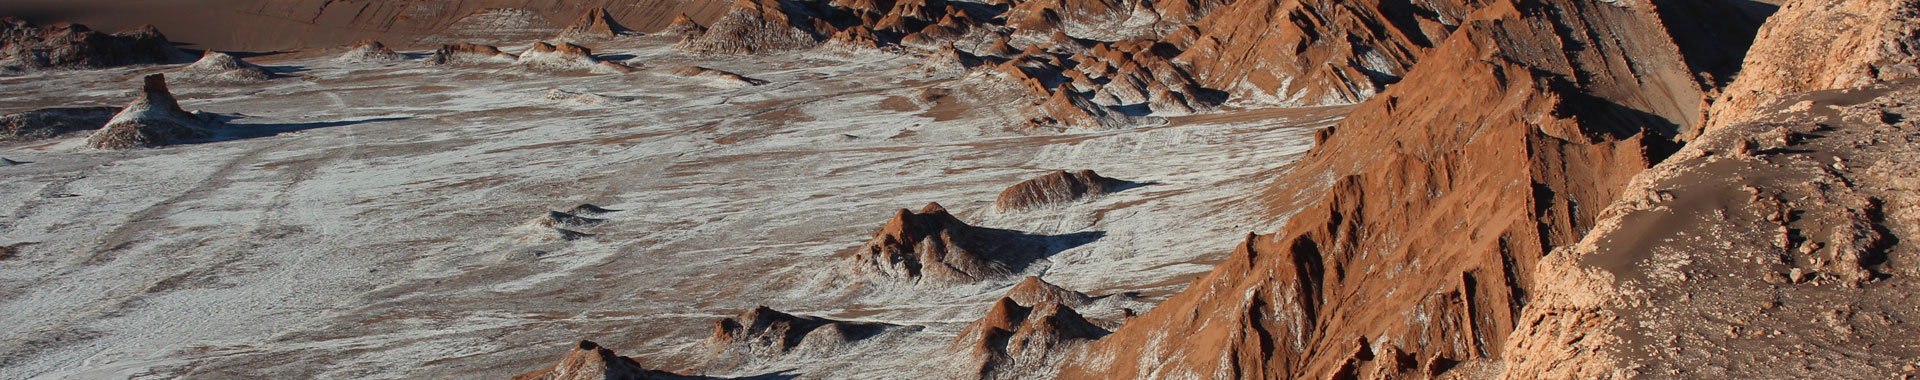 Chile - Atacama - Paseos - Valle